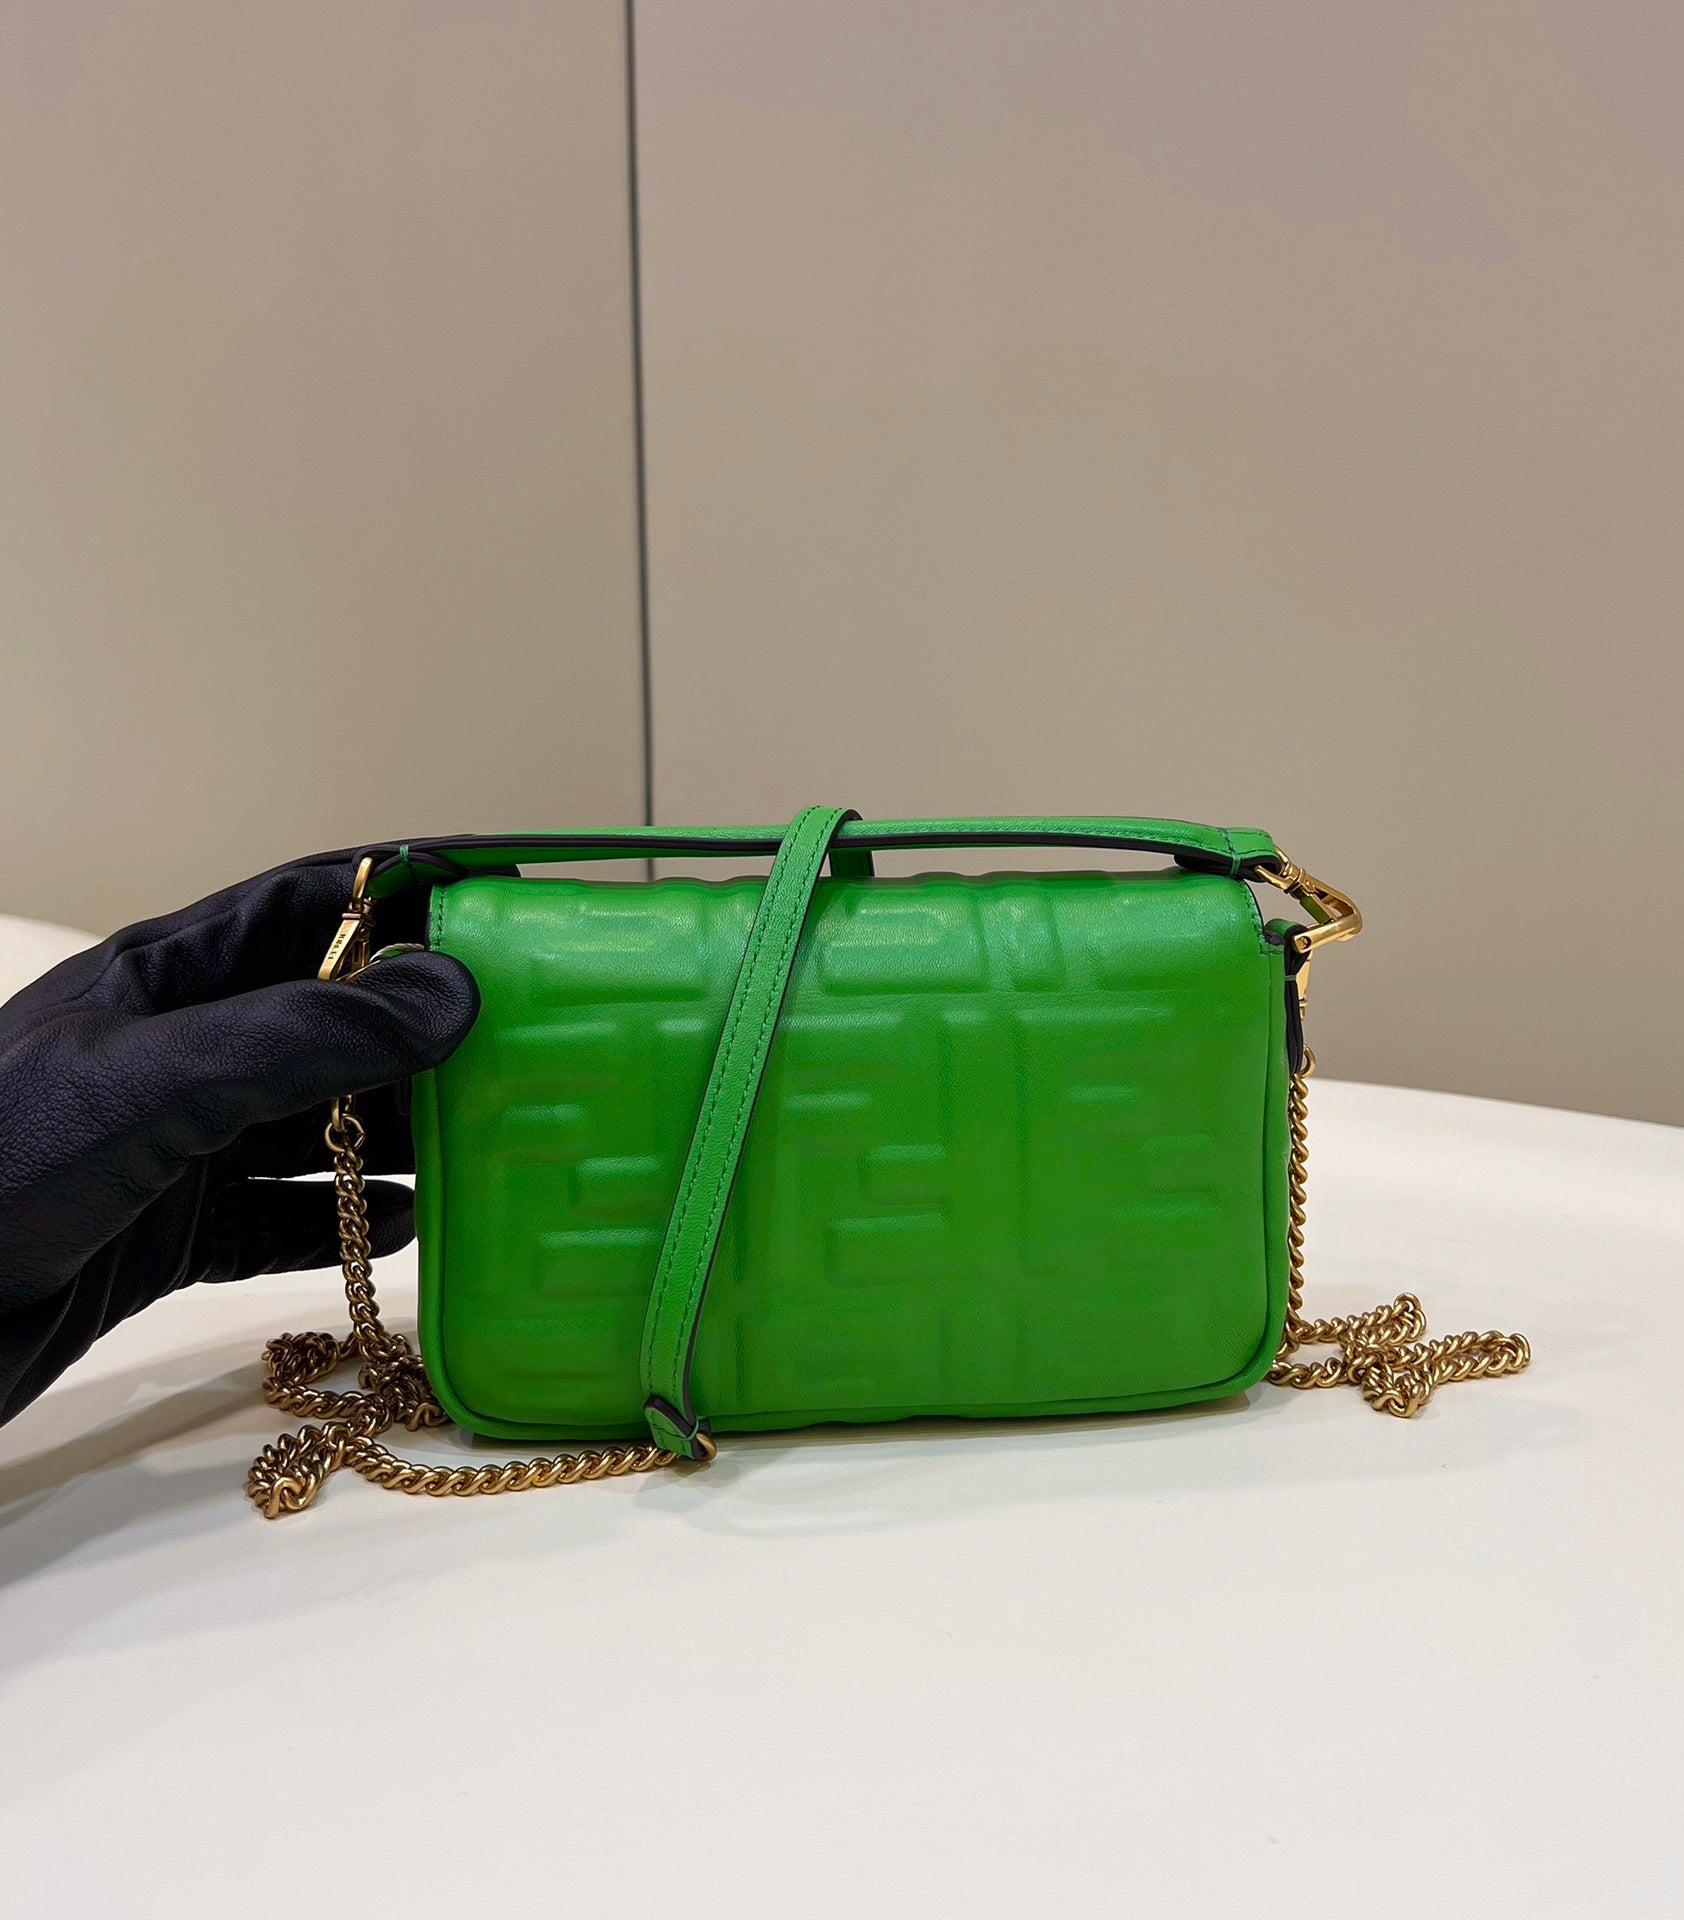 fendi-8bs017-baguette-mini-green-leather-0135-bag-002-luxibags.ru